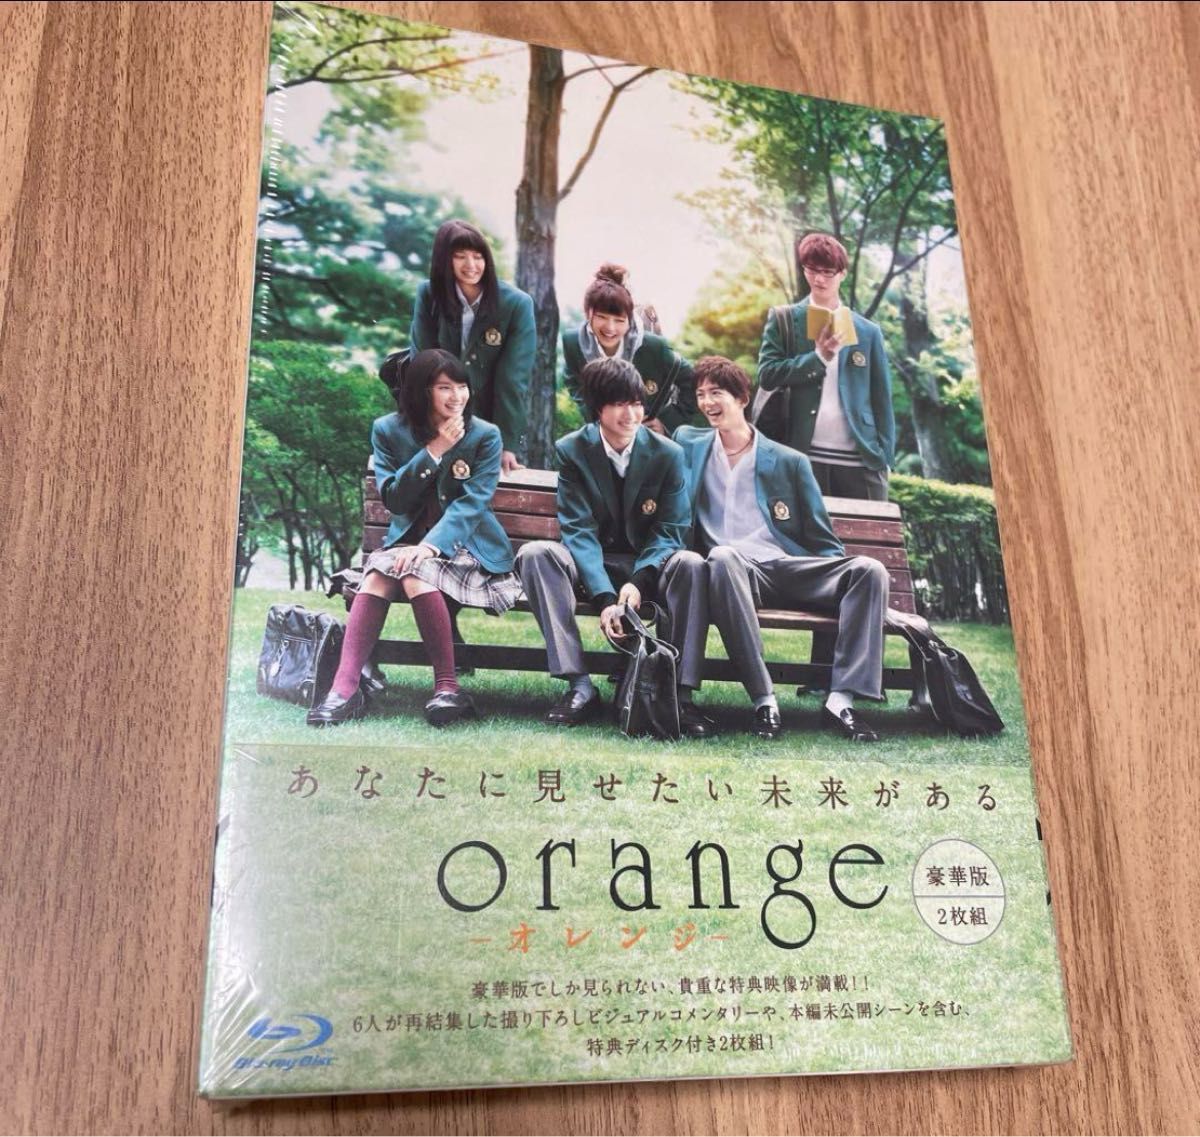 土屋太鳳 山崎賢人 orange オレンジ Blu-ray ブルーレイ 豪華版